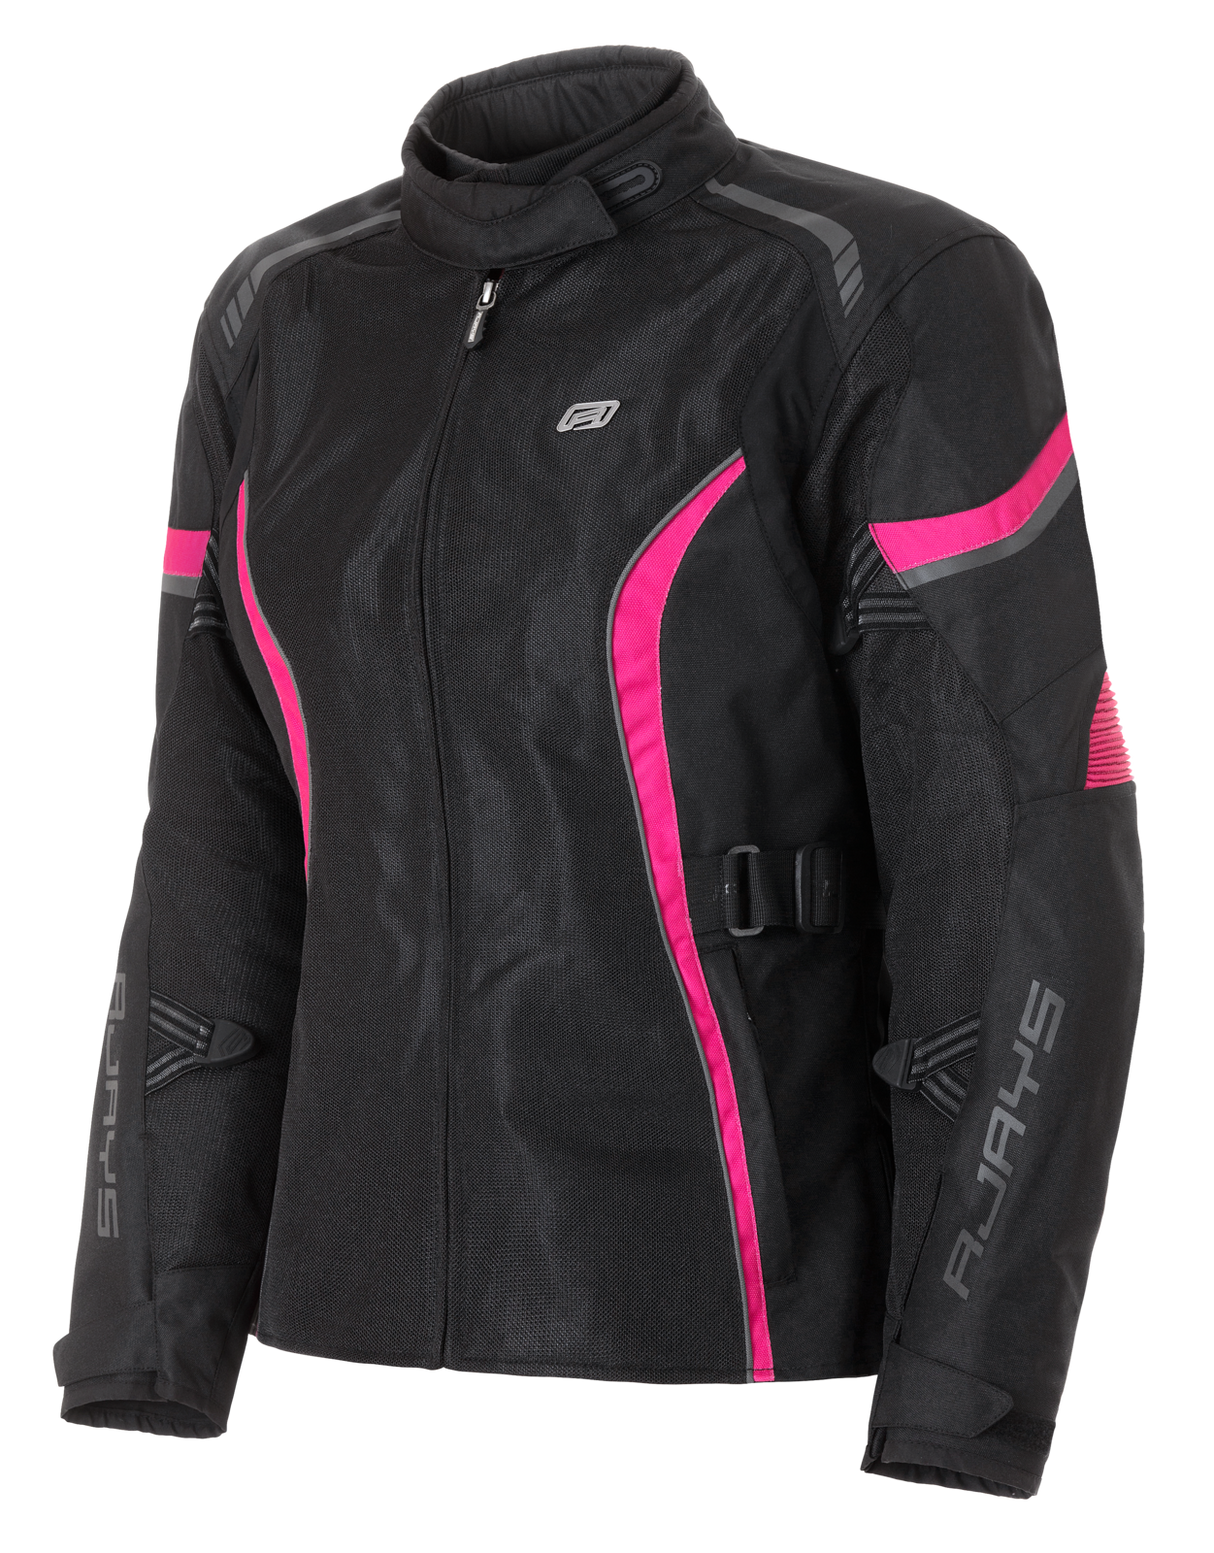 Rjays Athena Air Women's Jacket - Black/Pink